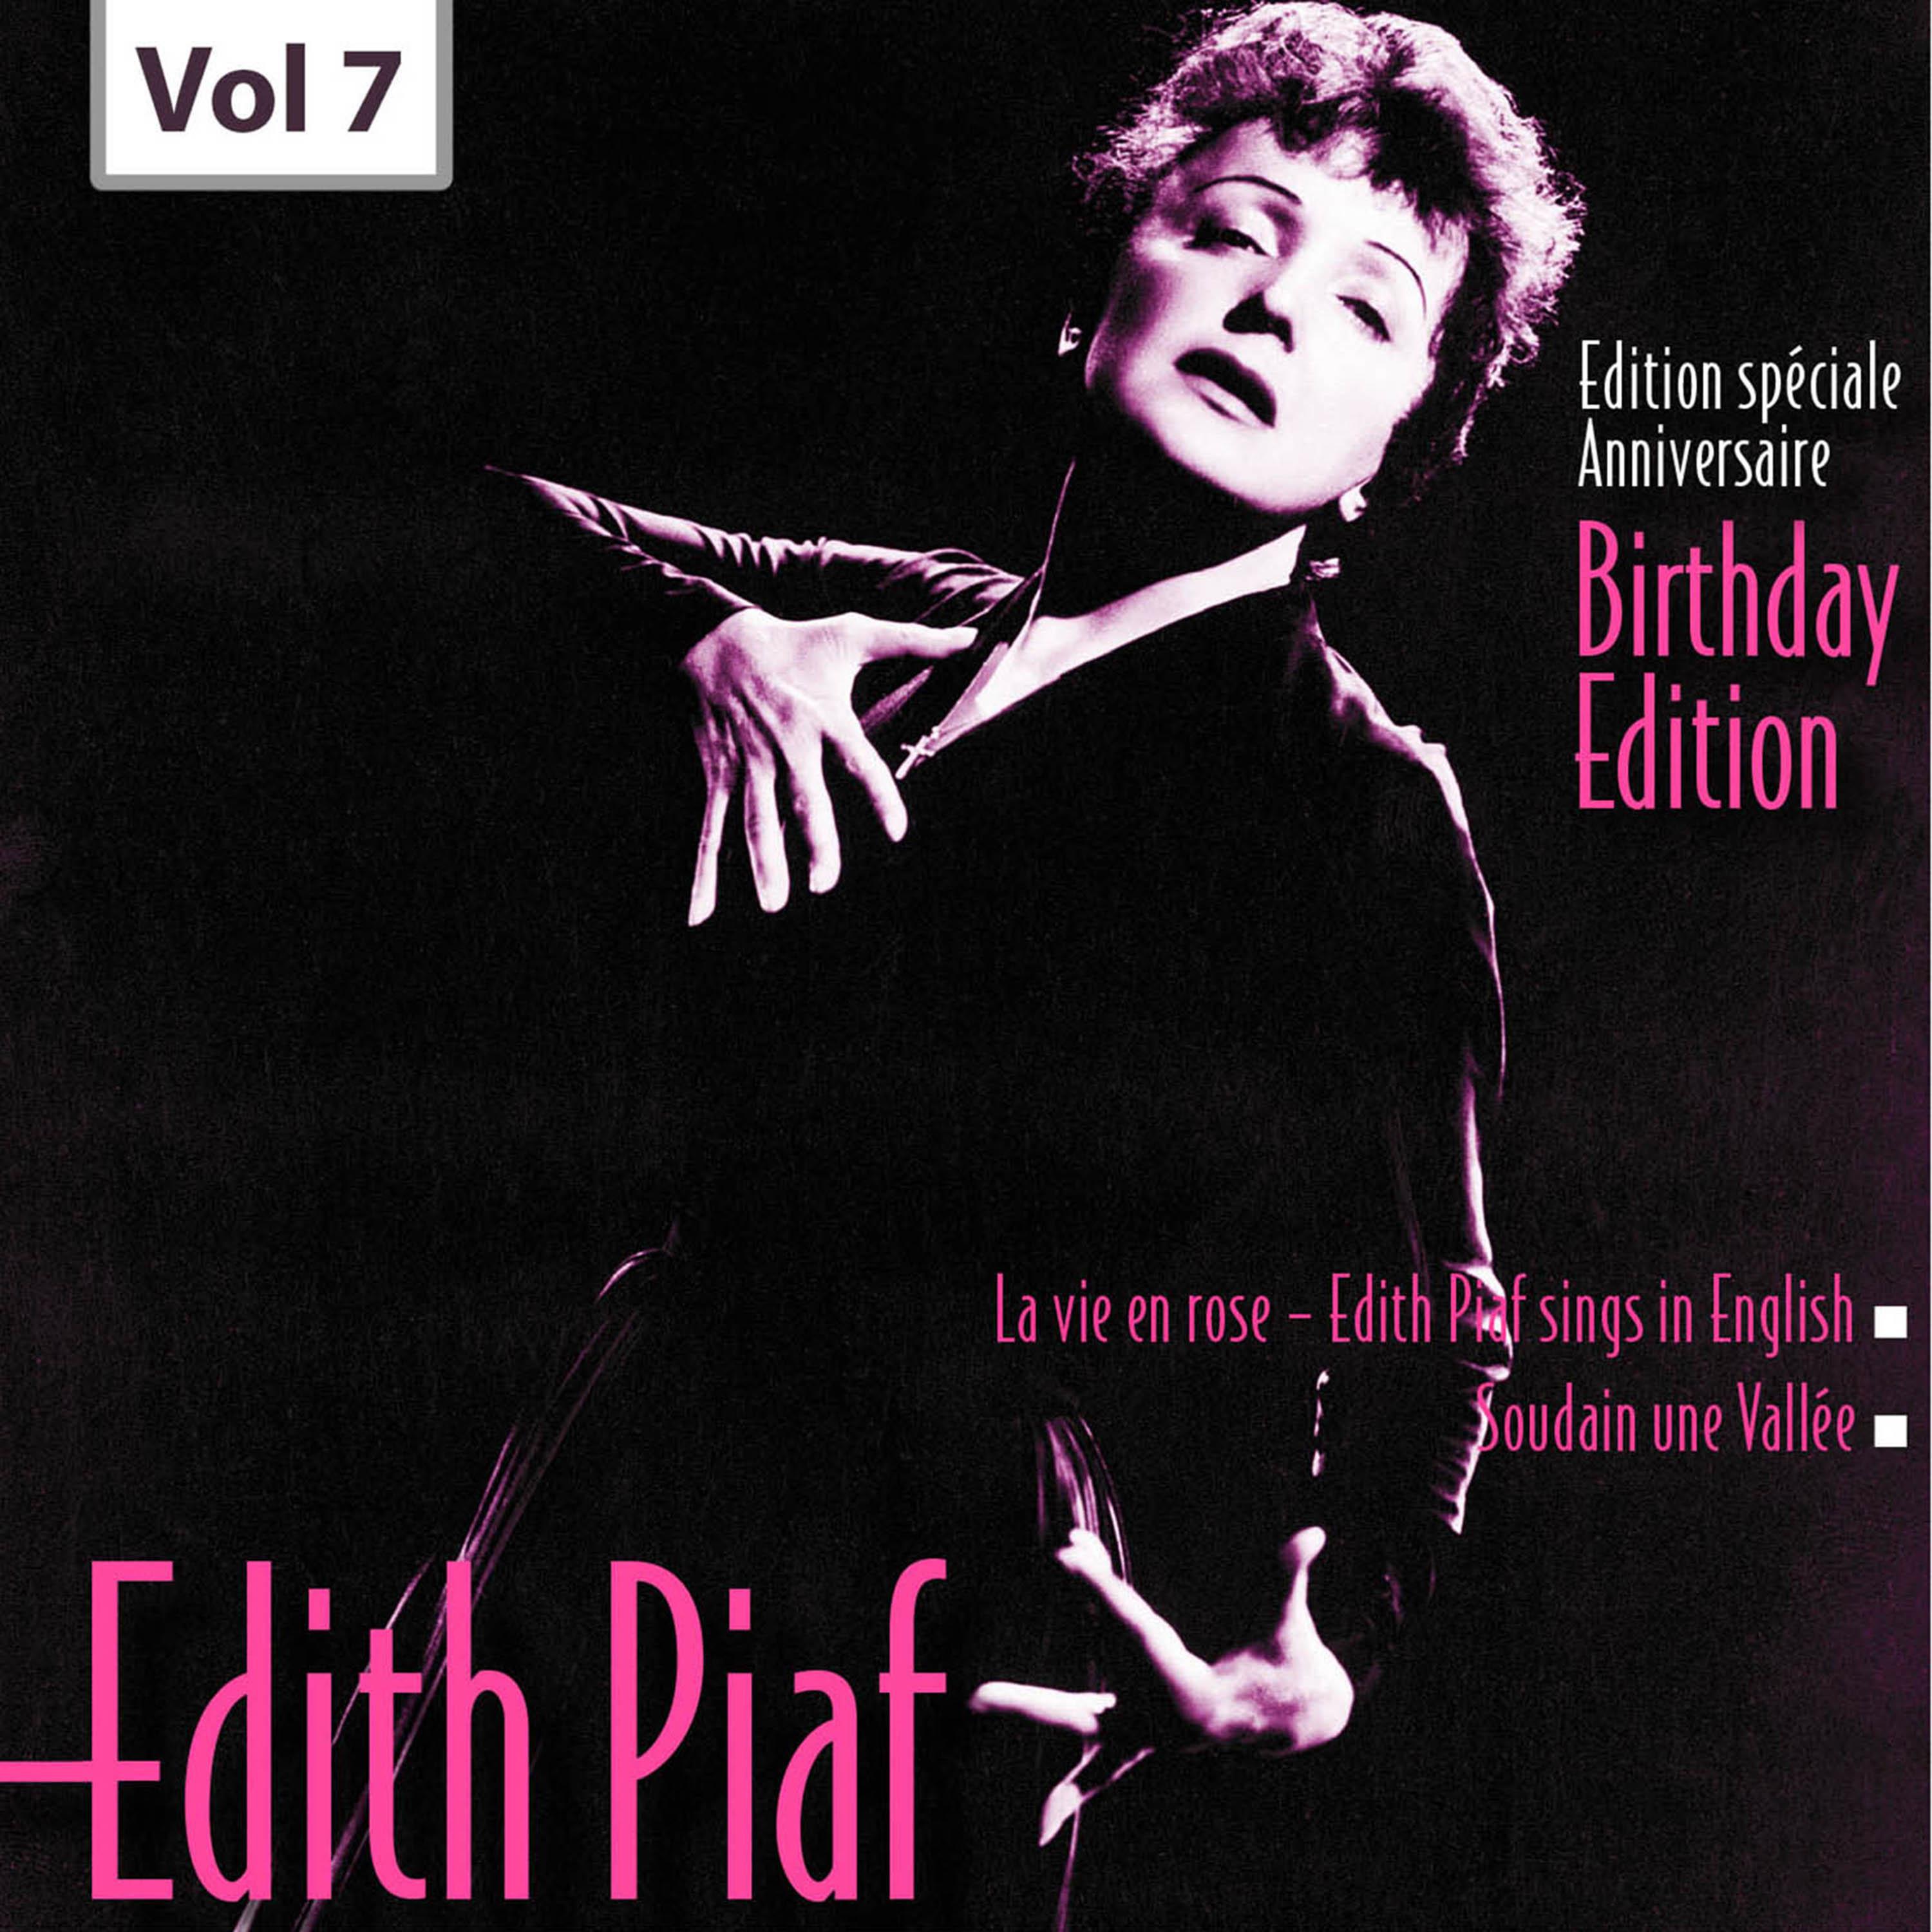 Edition Speciale Anniversaire. Birhday Edition - Edith Piaf, Vol.7